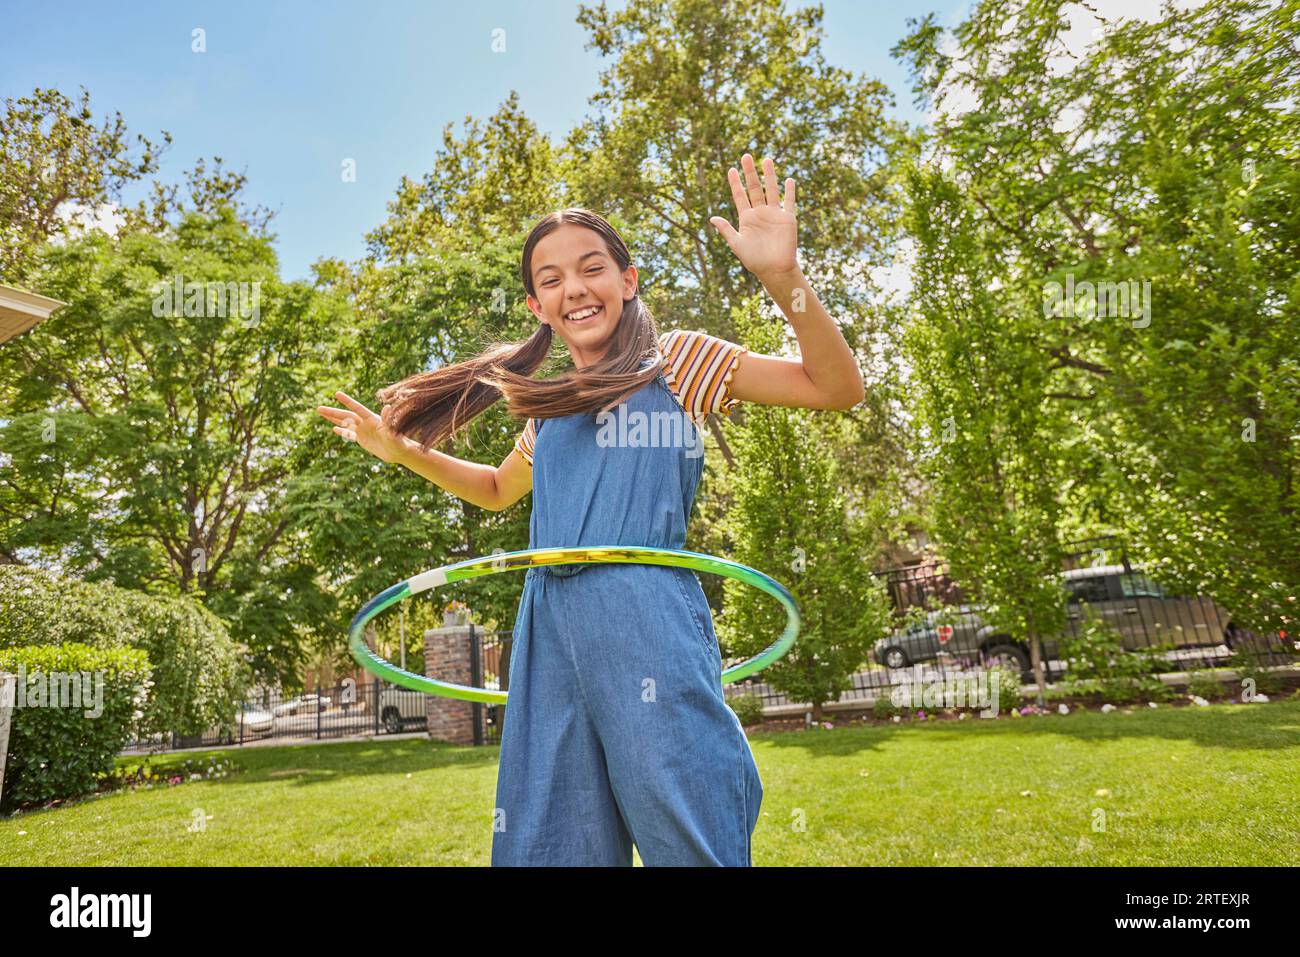 Foto De Stock Mujer De Fitness Deporte Niña Baila Con El Hula-Hoop, Libre  De Derechos